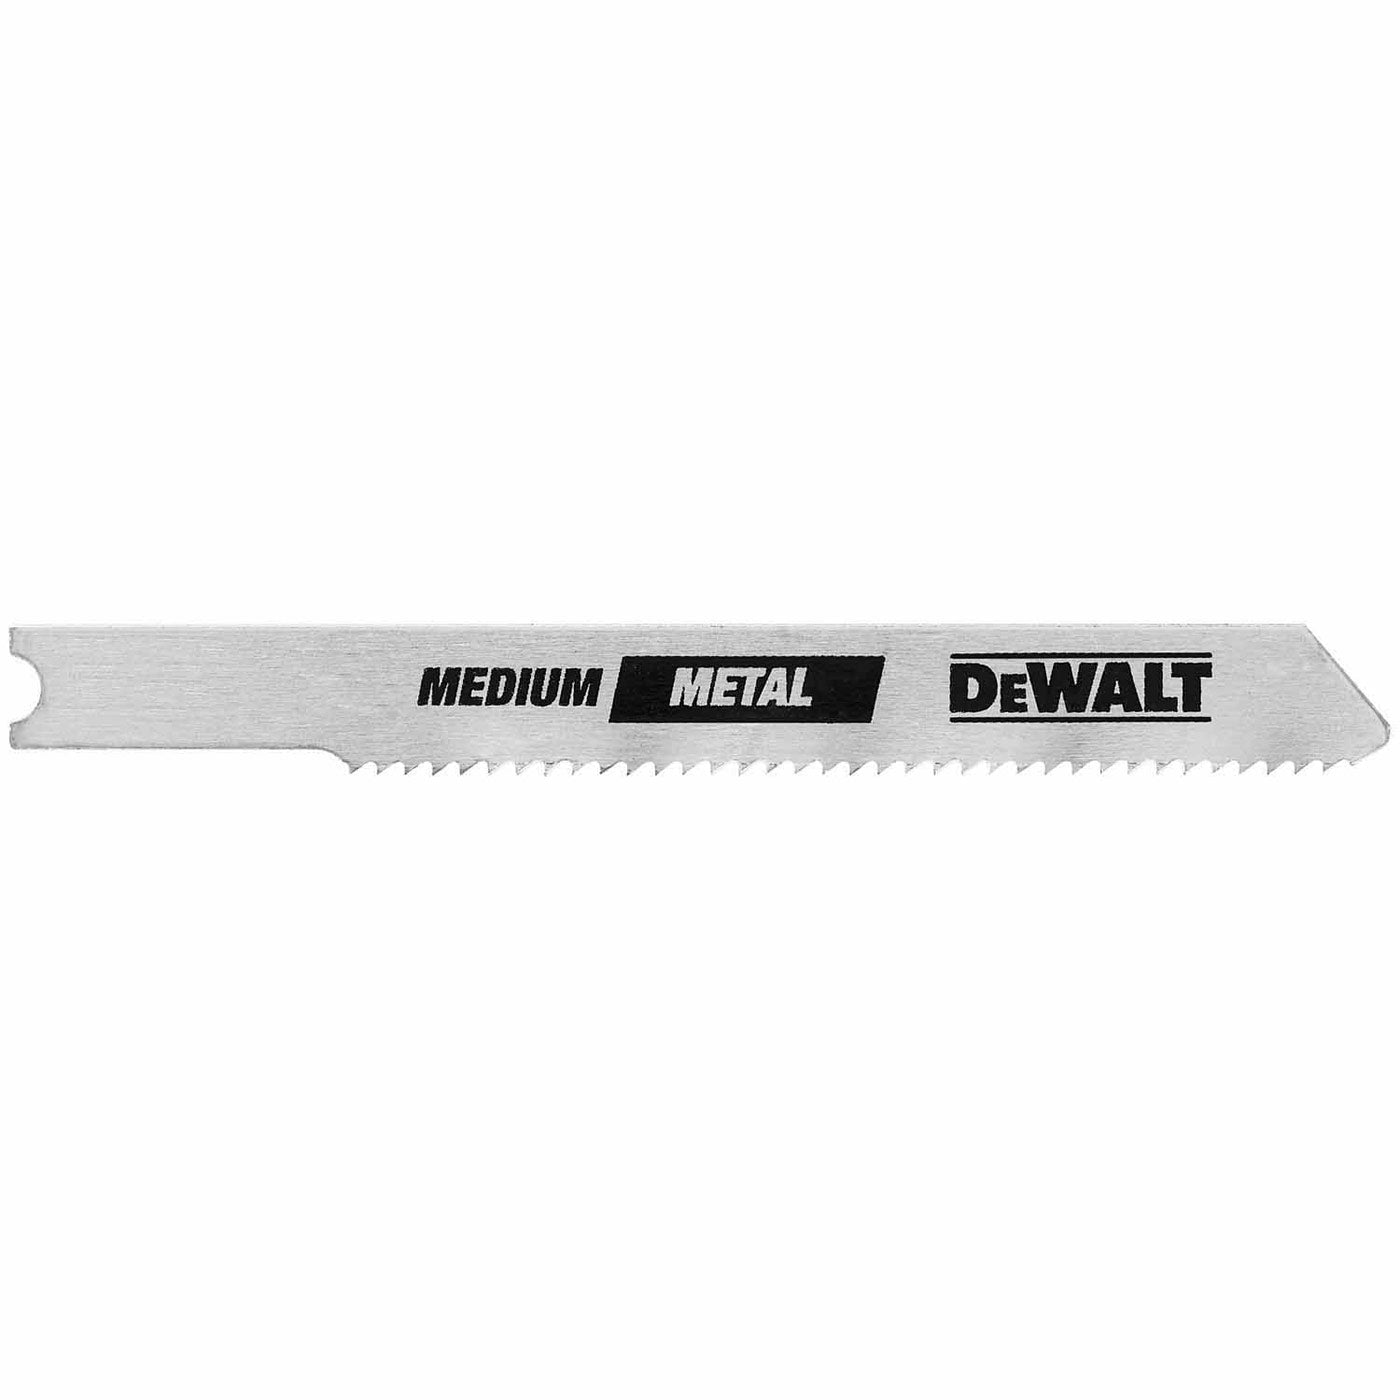 DeWalt DW3726-5 3" 24 TPI U-Shank Thin Metal Cutting Cobalt Steel Jig Saw Blade - 5 Pack